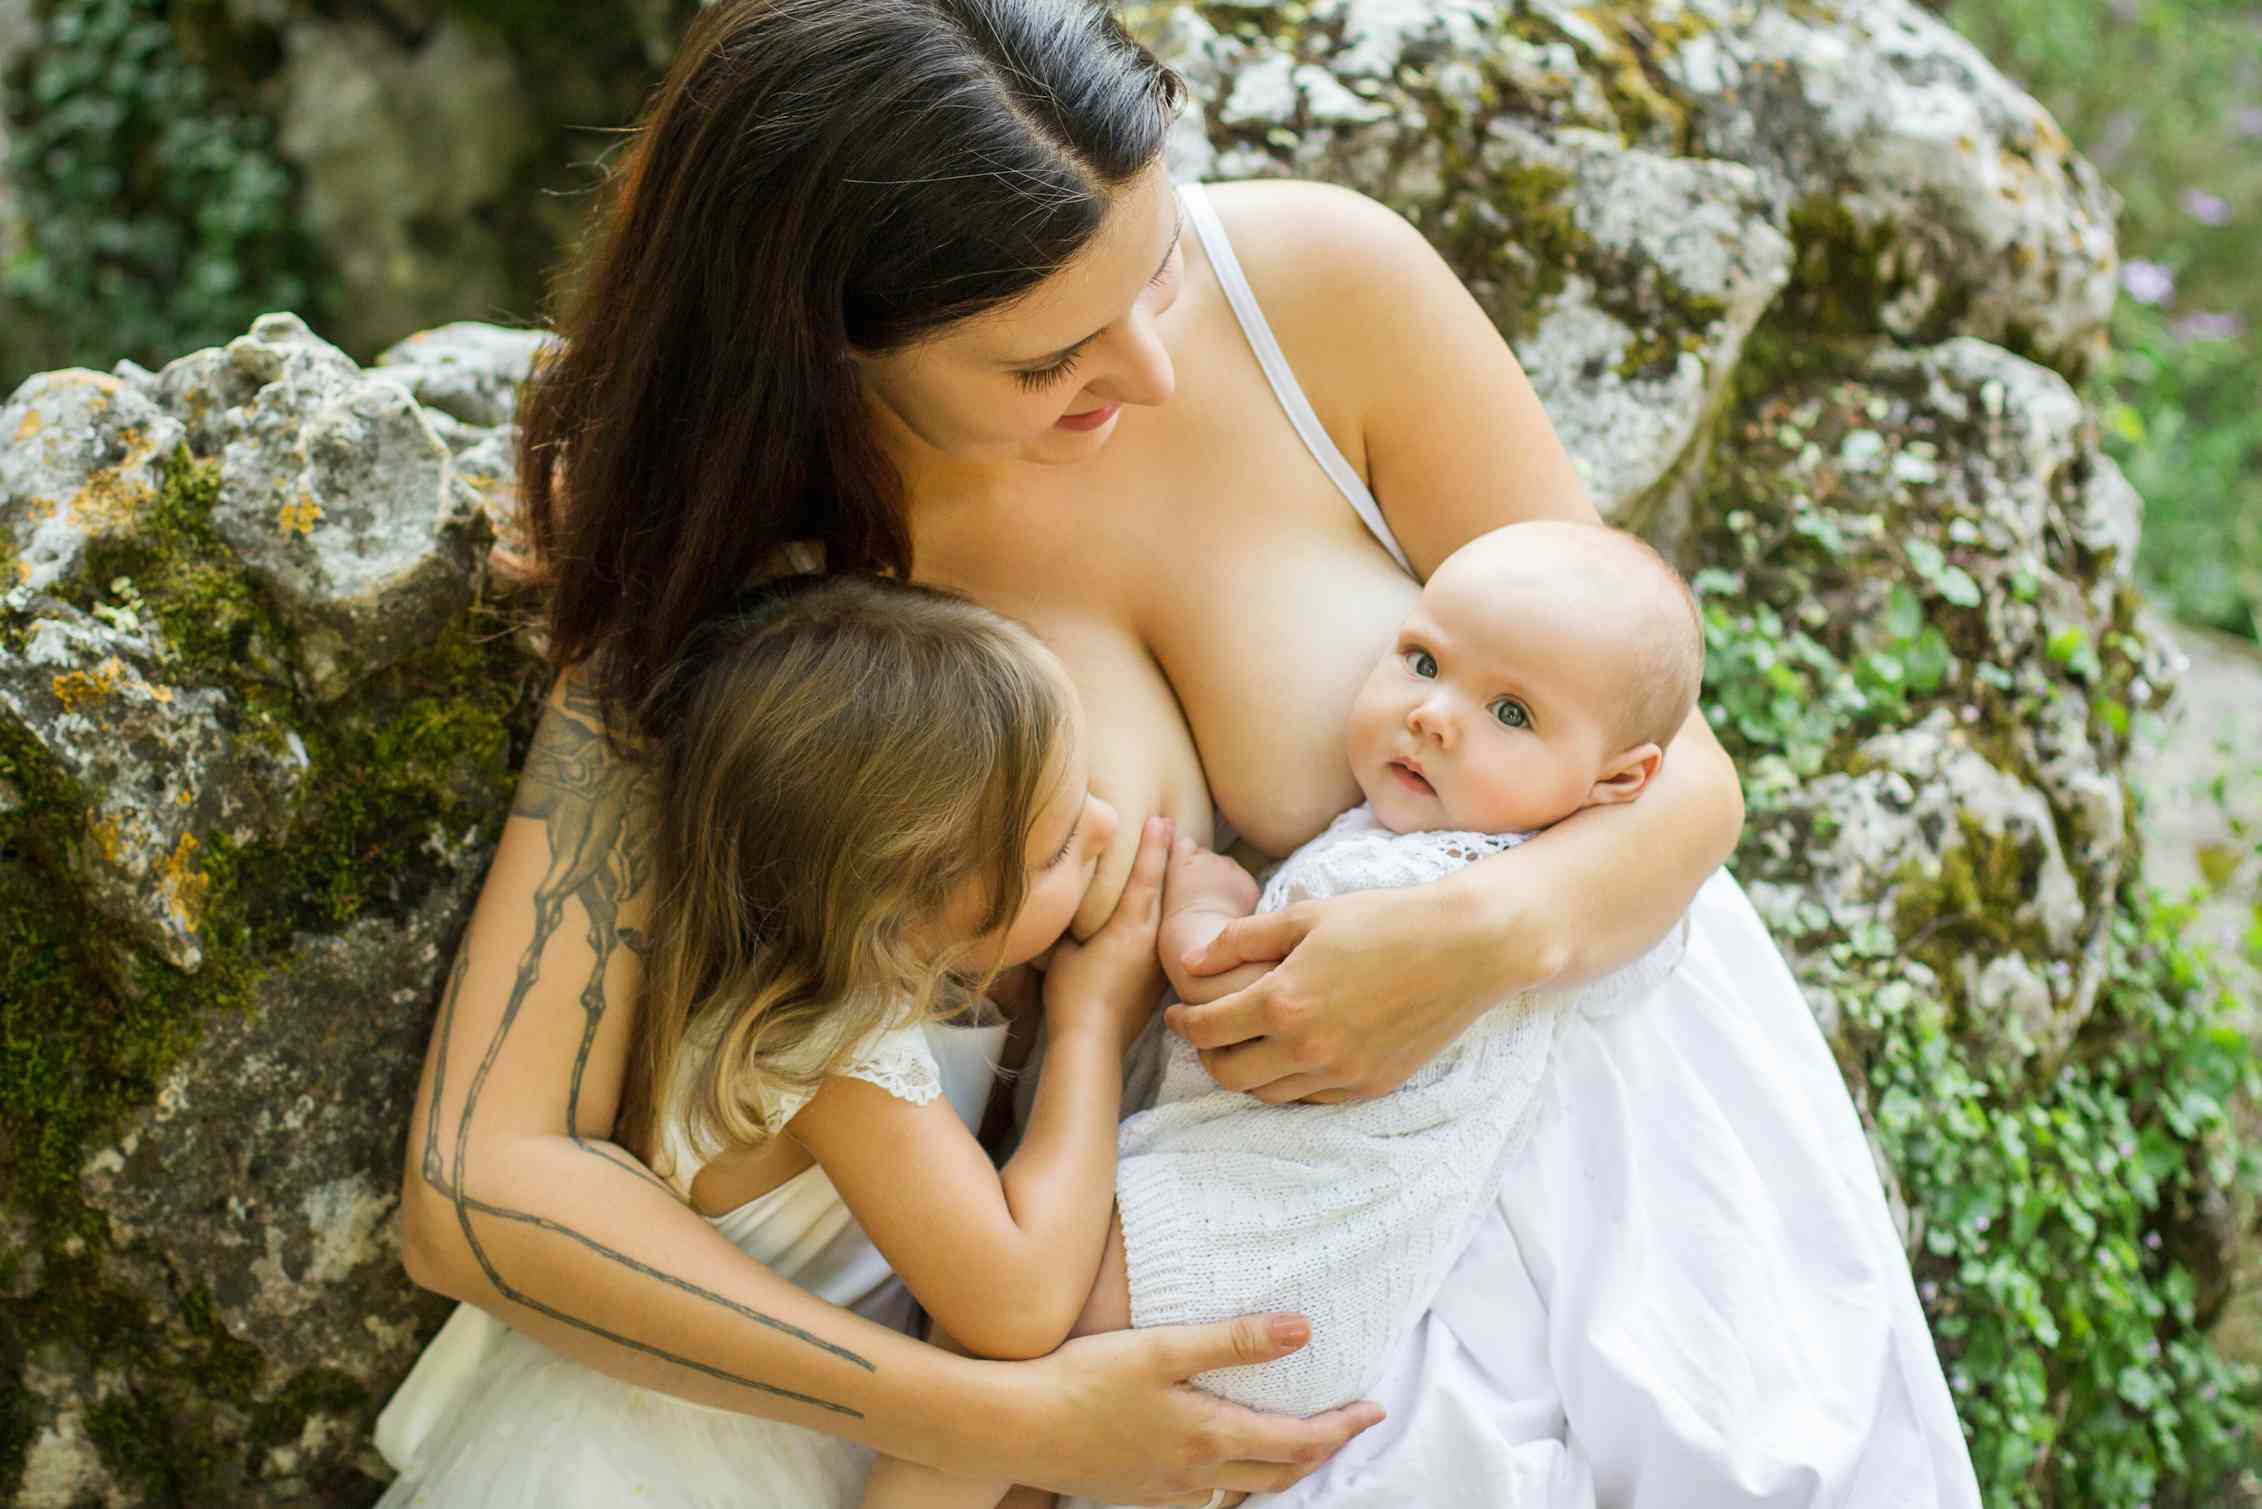 Видео красивых молодых мам. Парамеева Breastfeeding. Женщина с ребенком. Кормление грудью. Тандемное вскармливание.